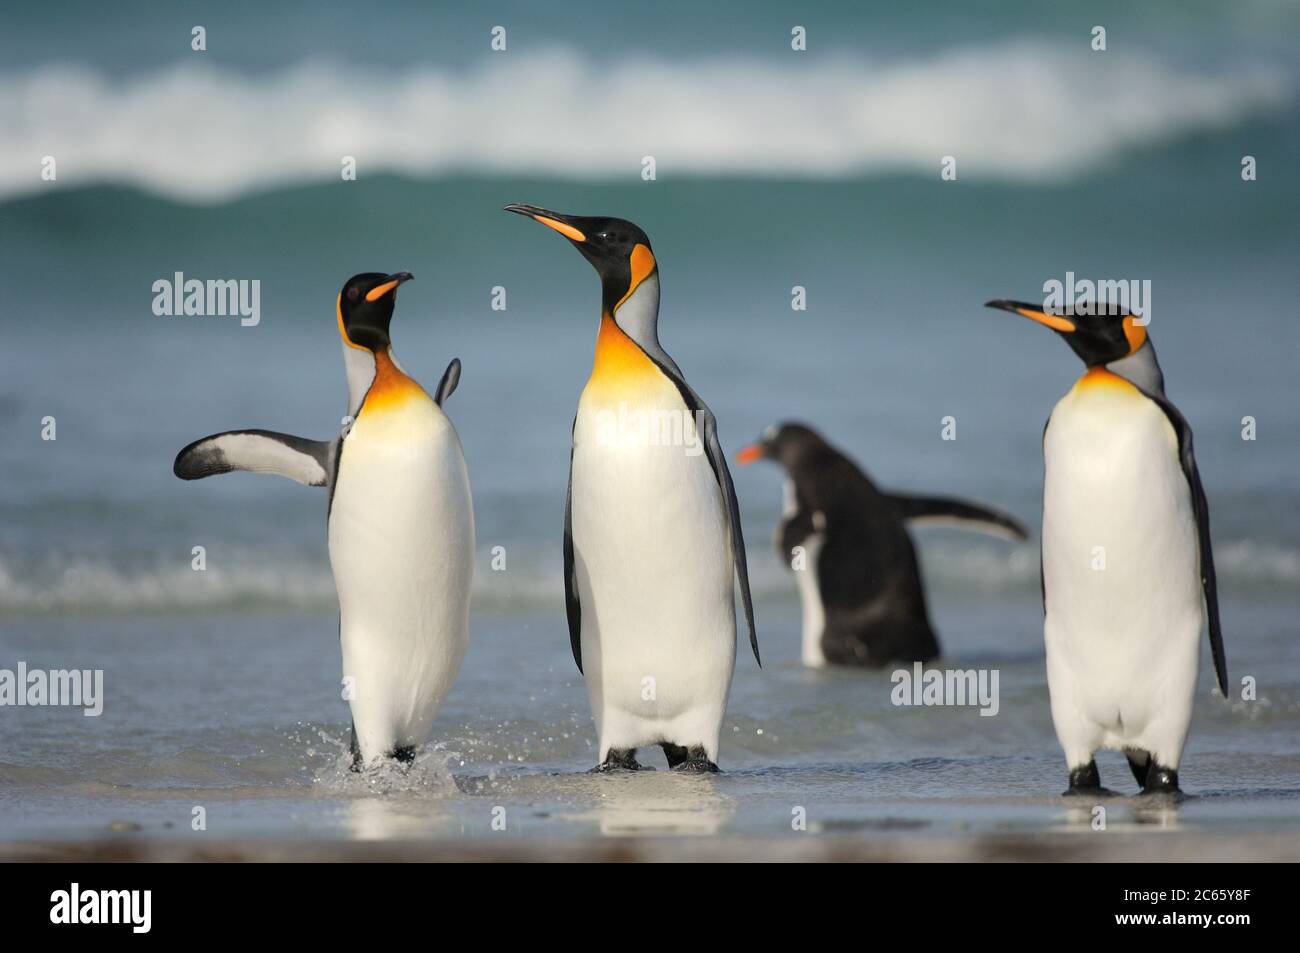 Partendo e ritornando dai loro viaggi di foraggio i pinguini del re (Atenodytes patagonicus) si riuniscono spesso in gruppi. Questa abitudine riduce potenzialmente il rischio di essere catturati dai loro predatori acquatici, ad esempio il leone marino e l'orca. Foto Stock